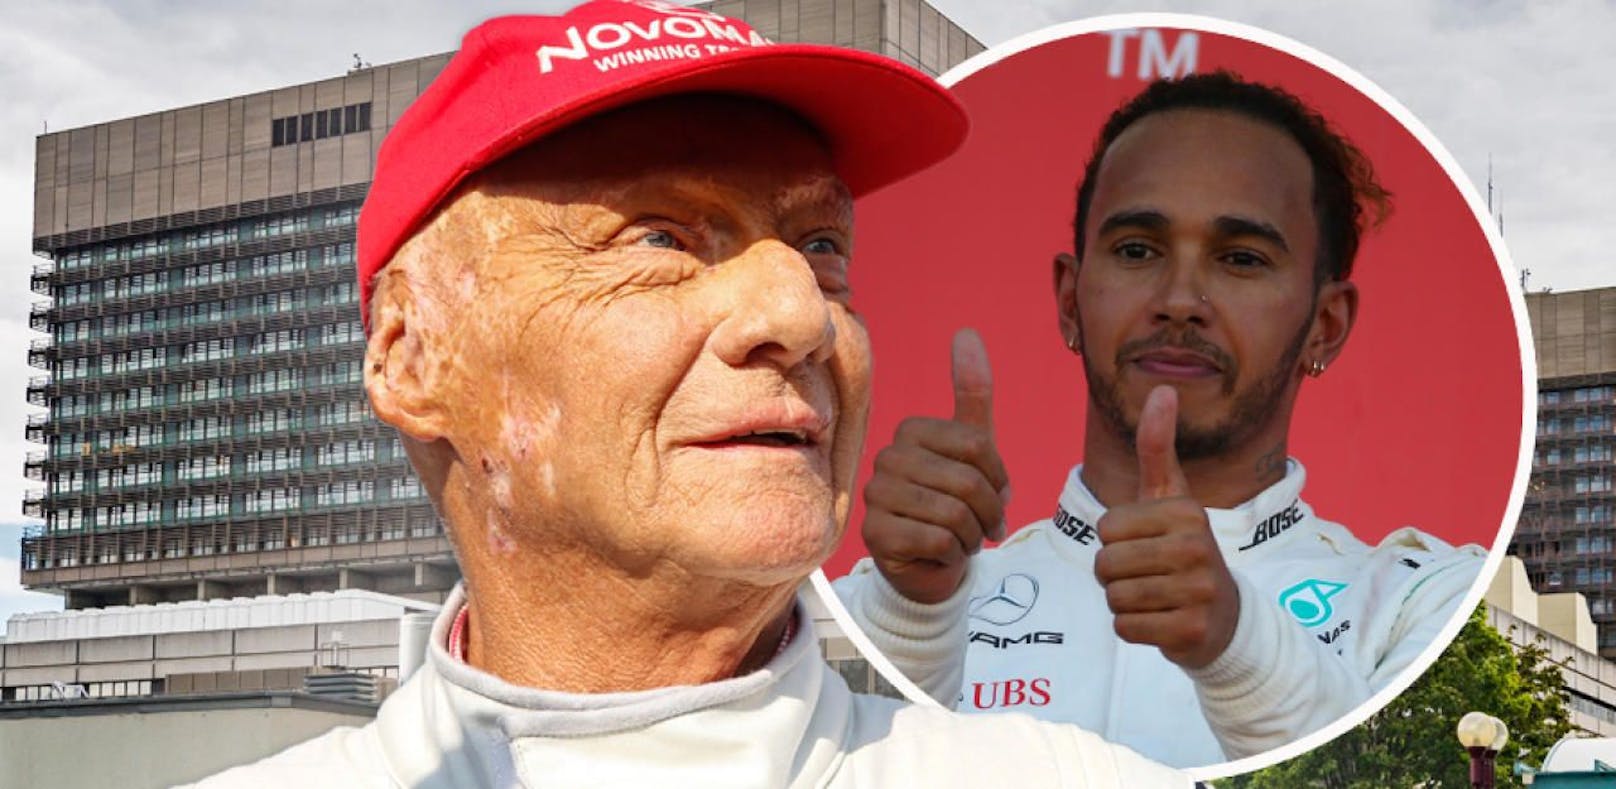 Niki Lauda, Lewis Hamilton